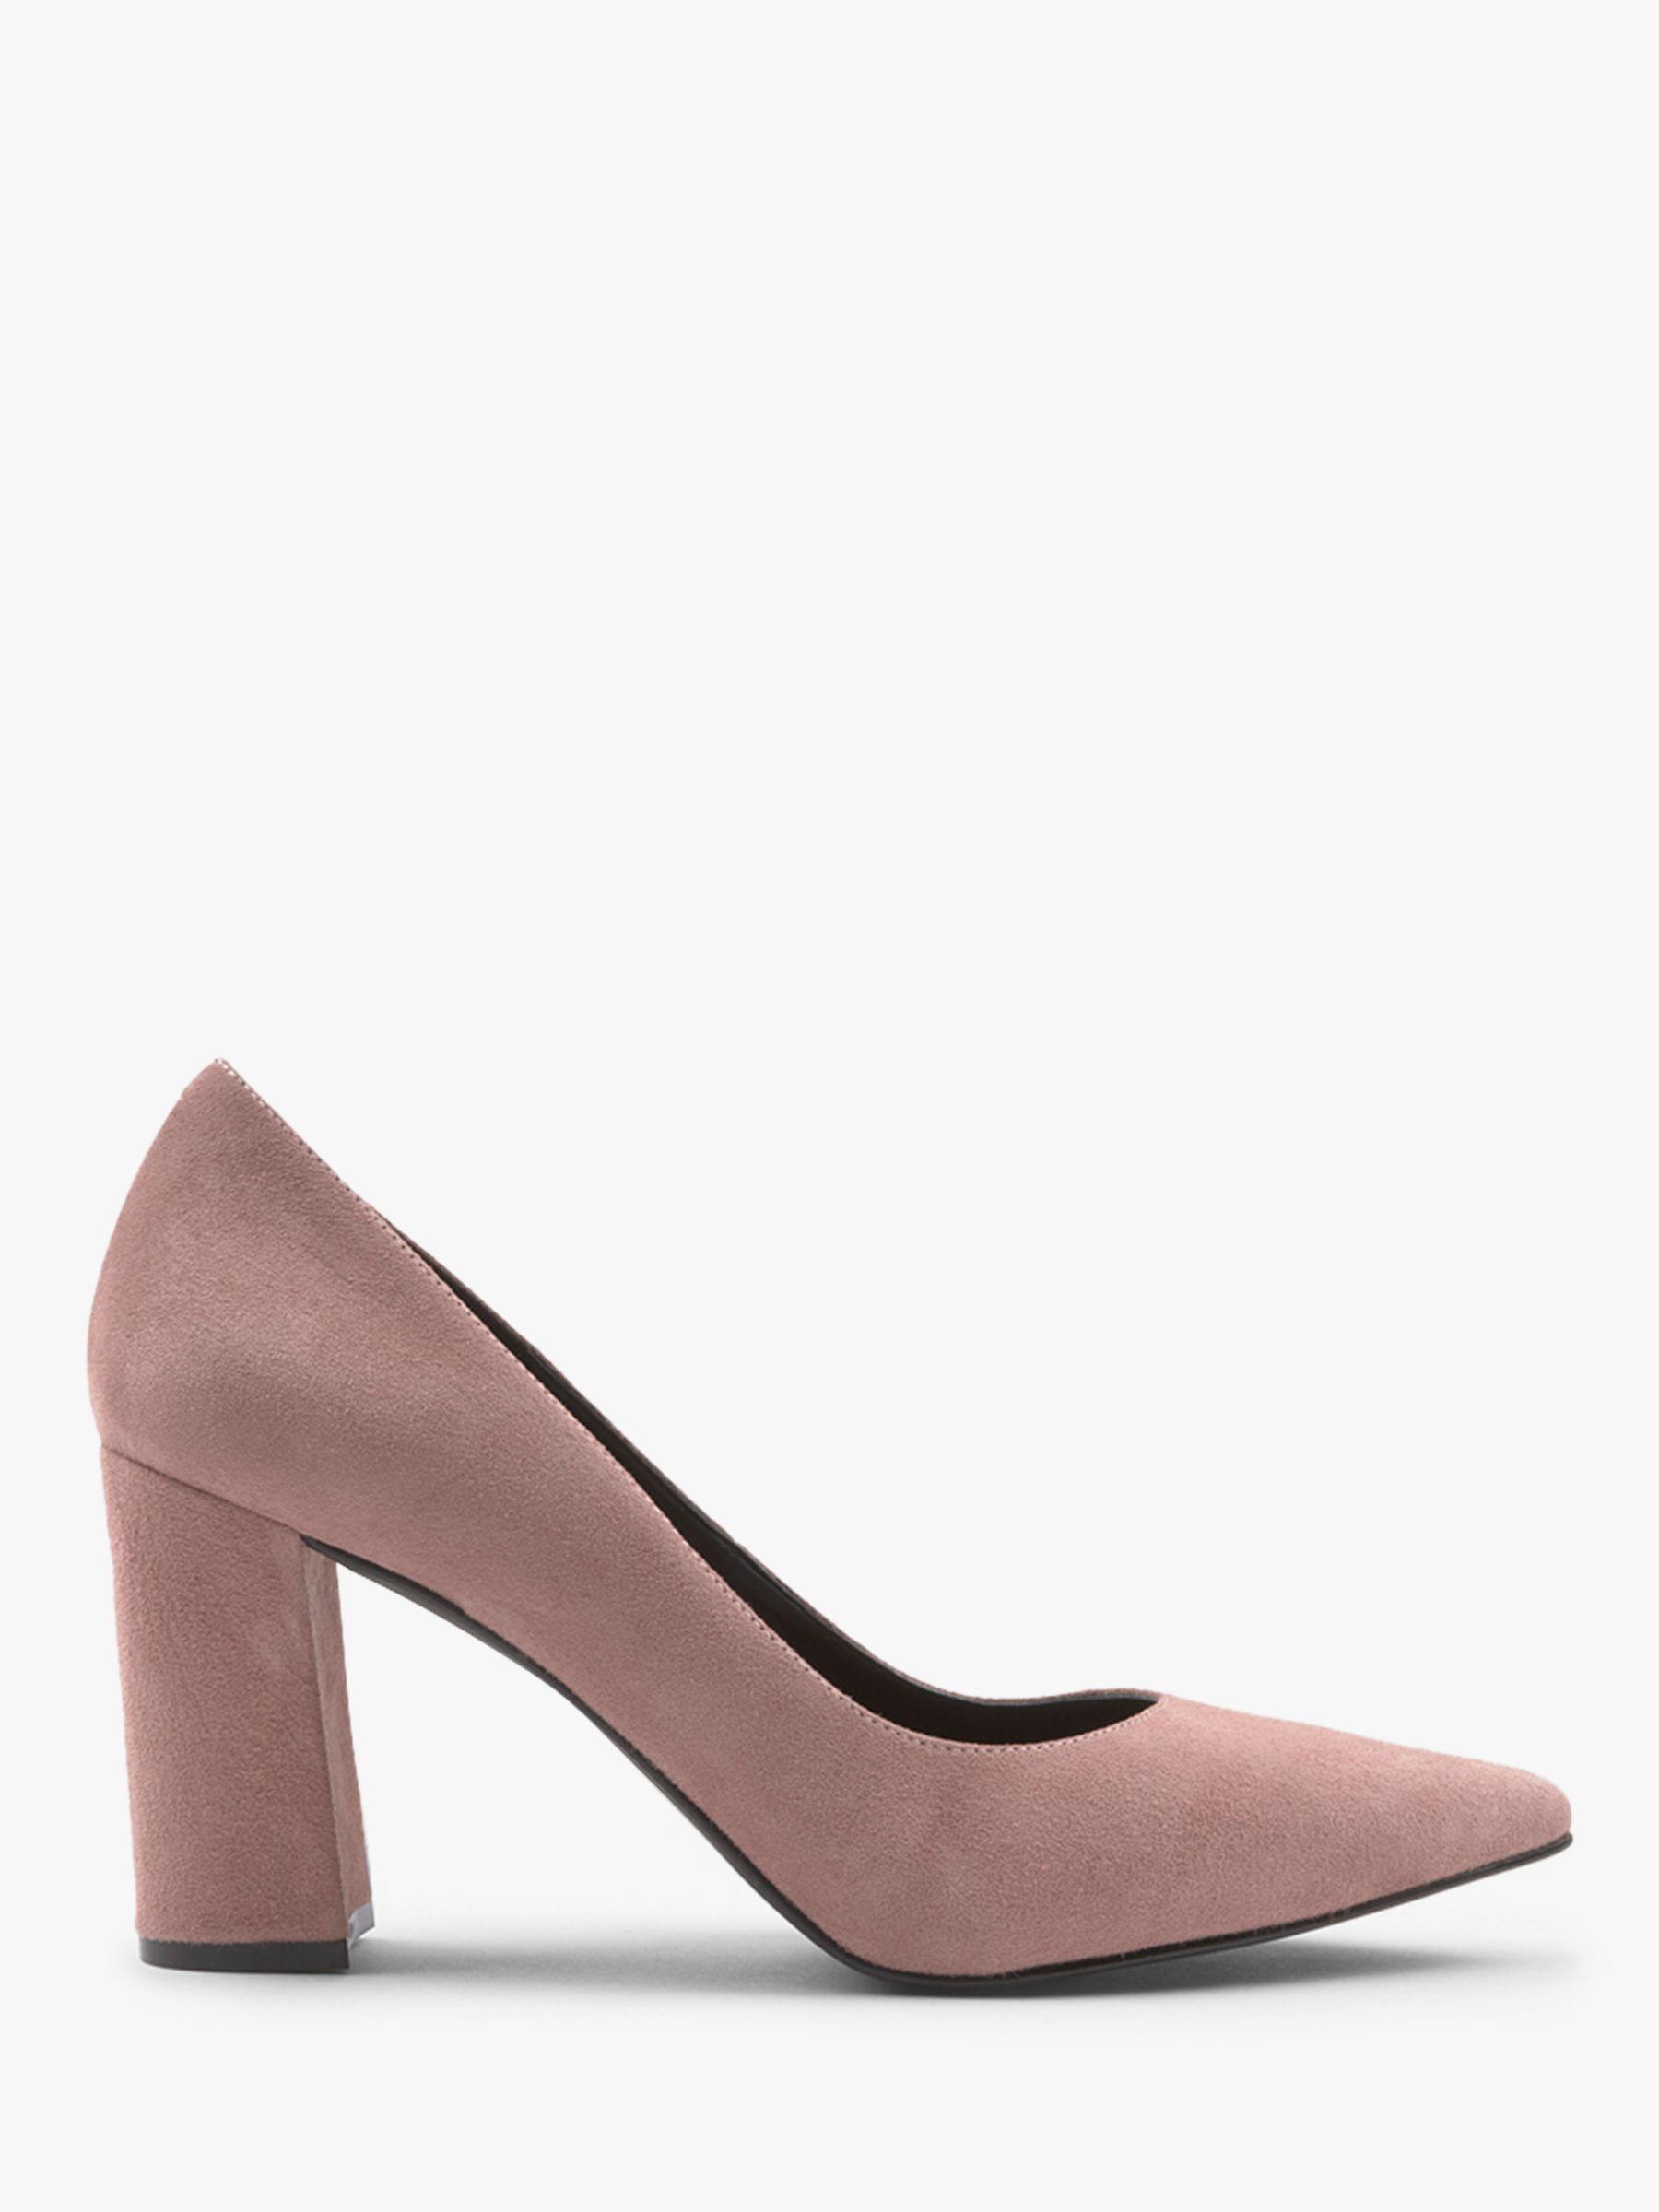 light pink block heel shoes